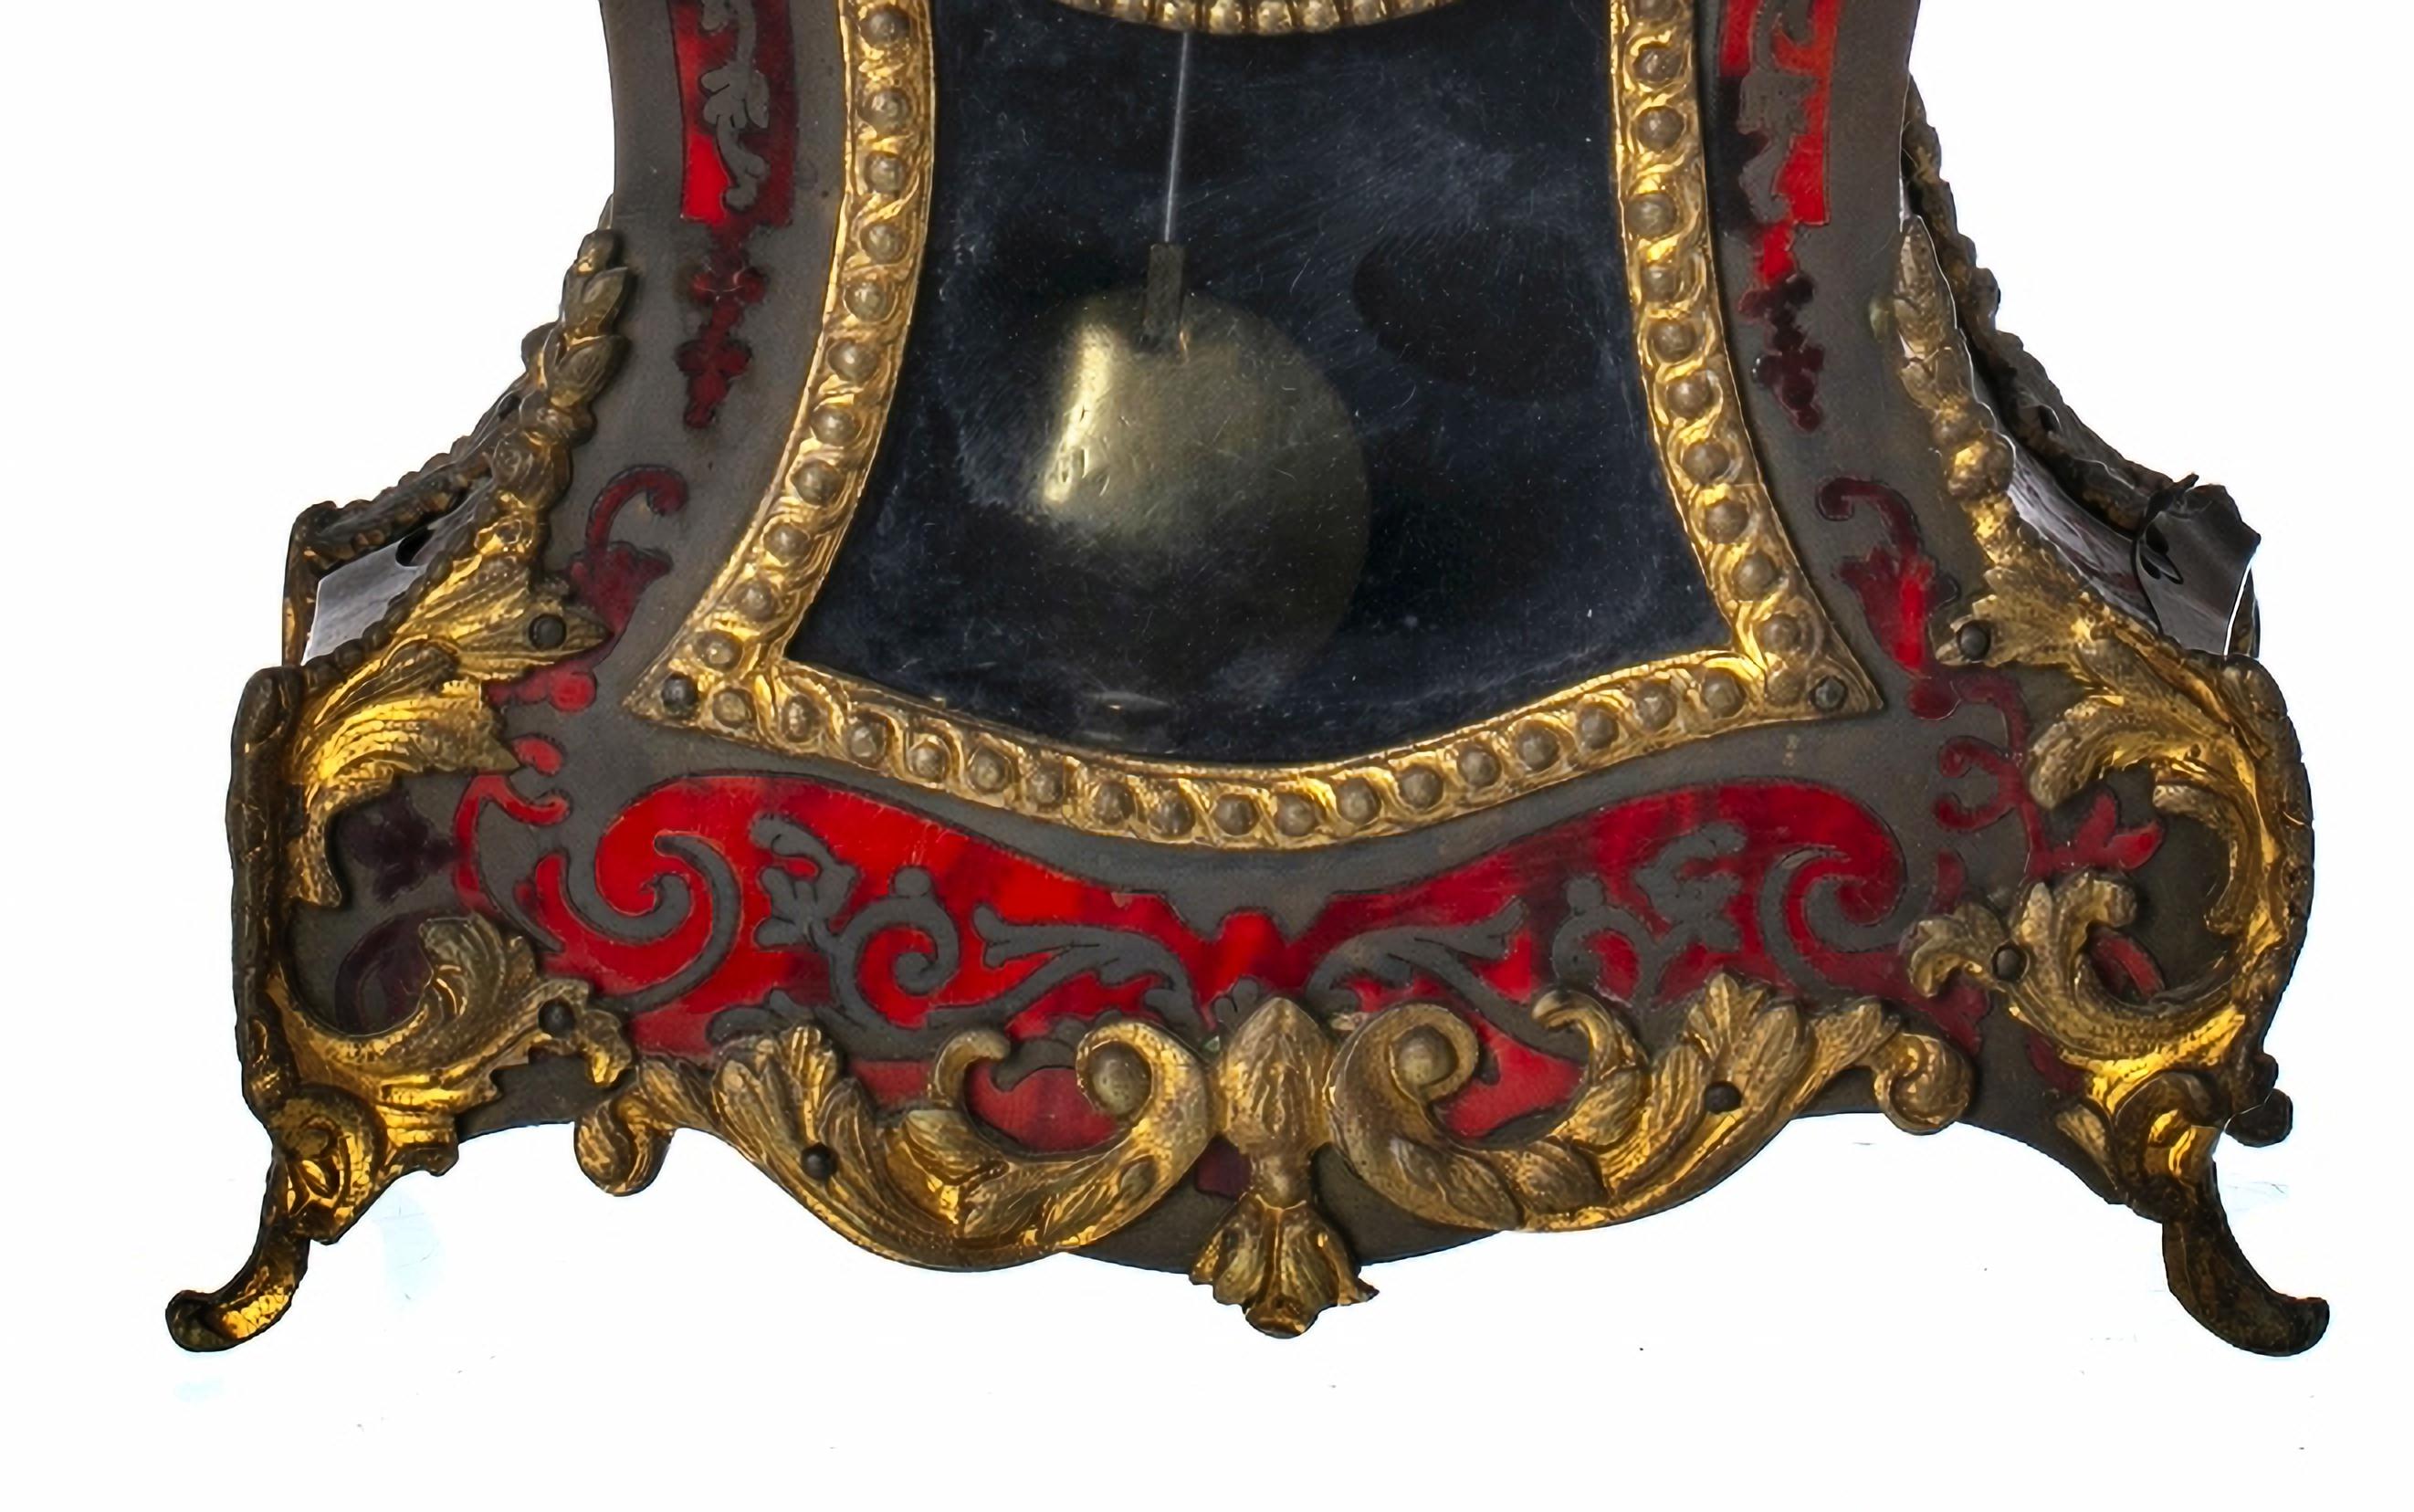 HORLOGE DE TABLE

Français, vers 1740.
Coffret en bois recouvert d'écaille, avec applications en bronze doré, décoré de motifs végétaux et d'un masque.

Cadran émaillé avec chiffres romains, inscription sur le cadran Adrien, machine marquée 